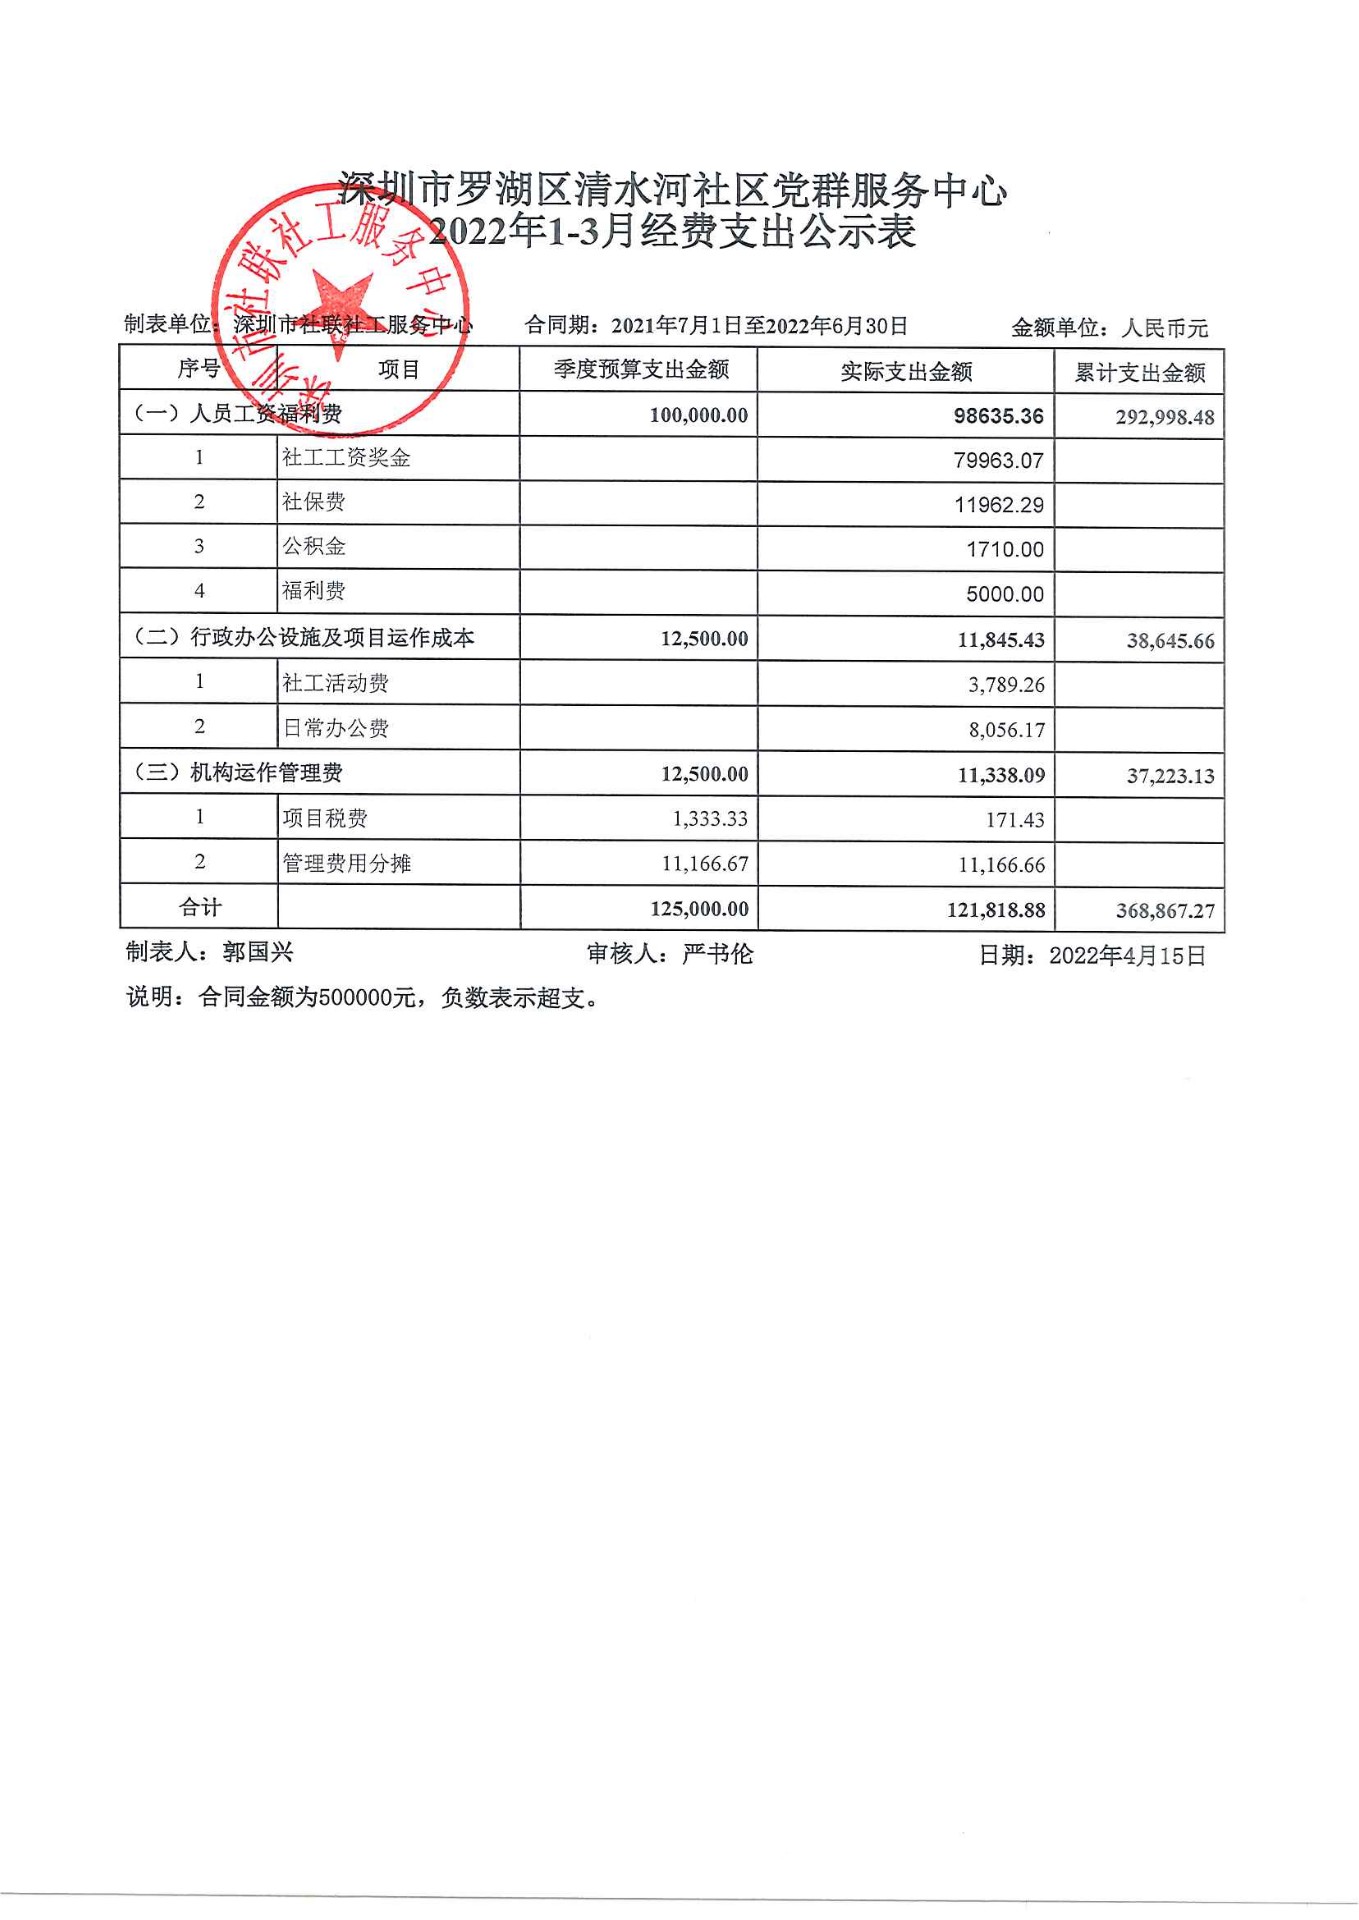 清水河社区2022年1-3月财务公示表